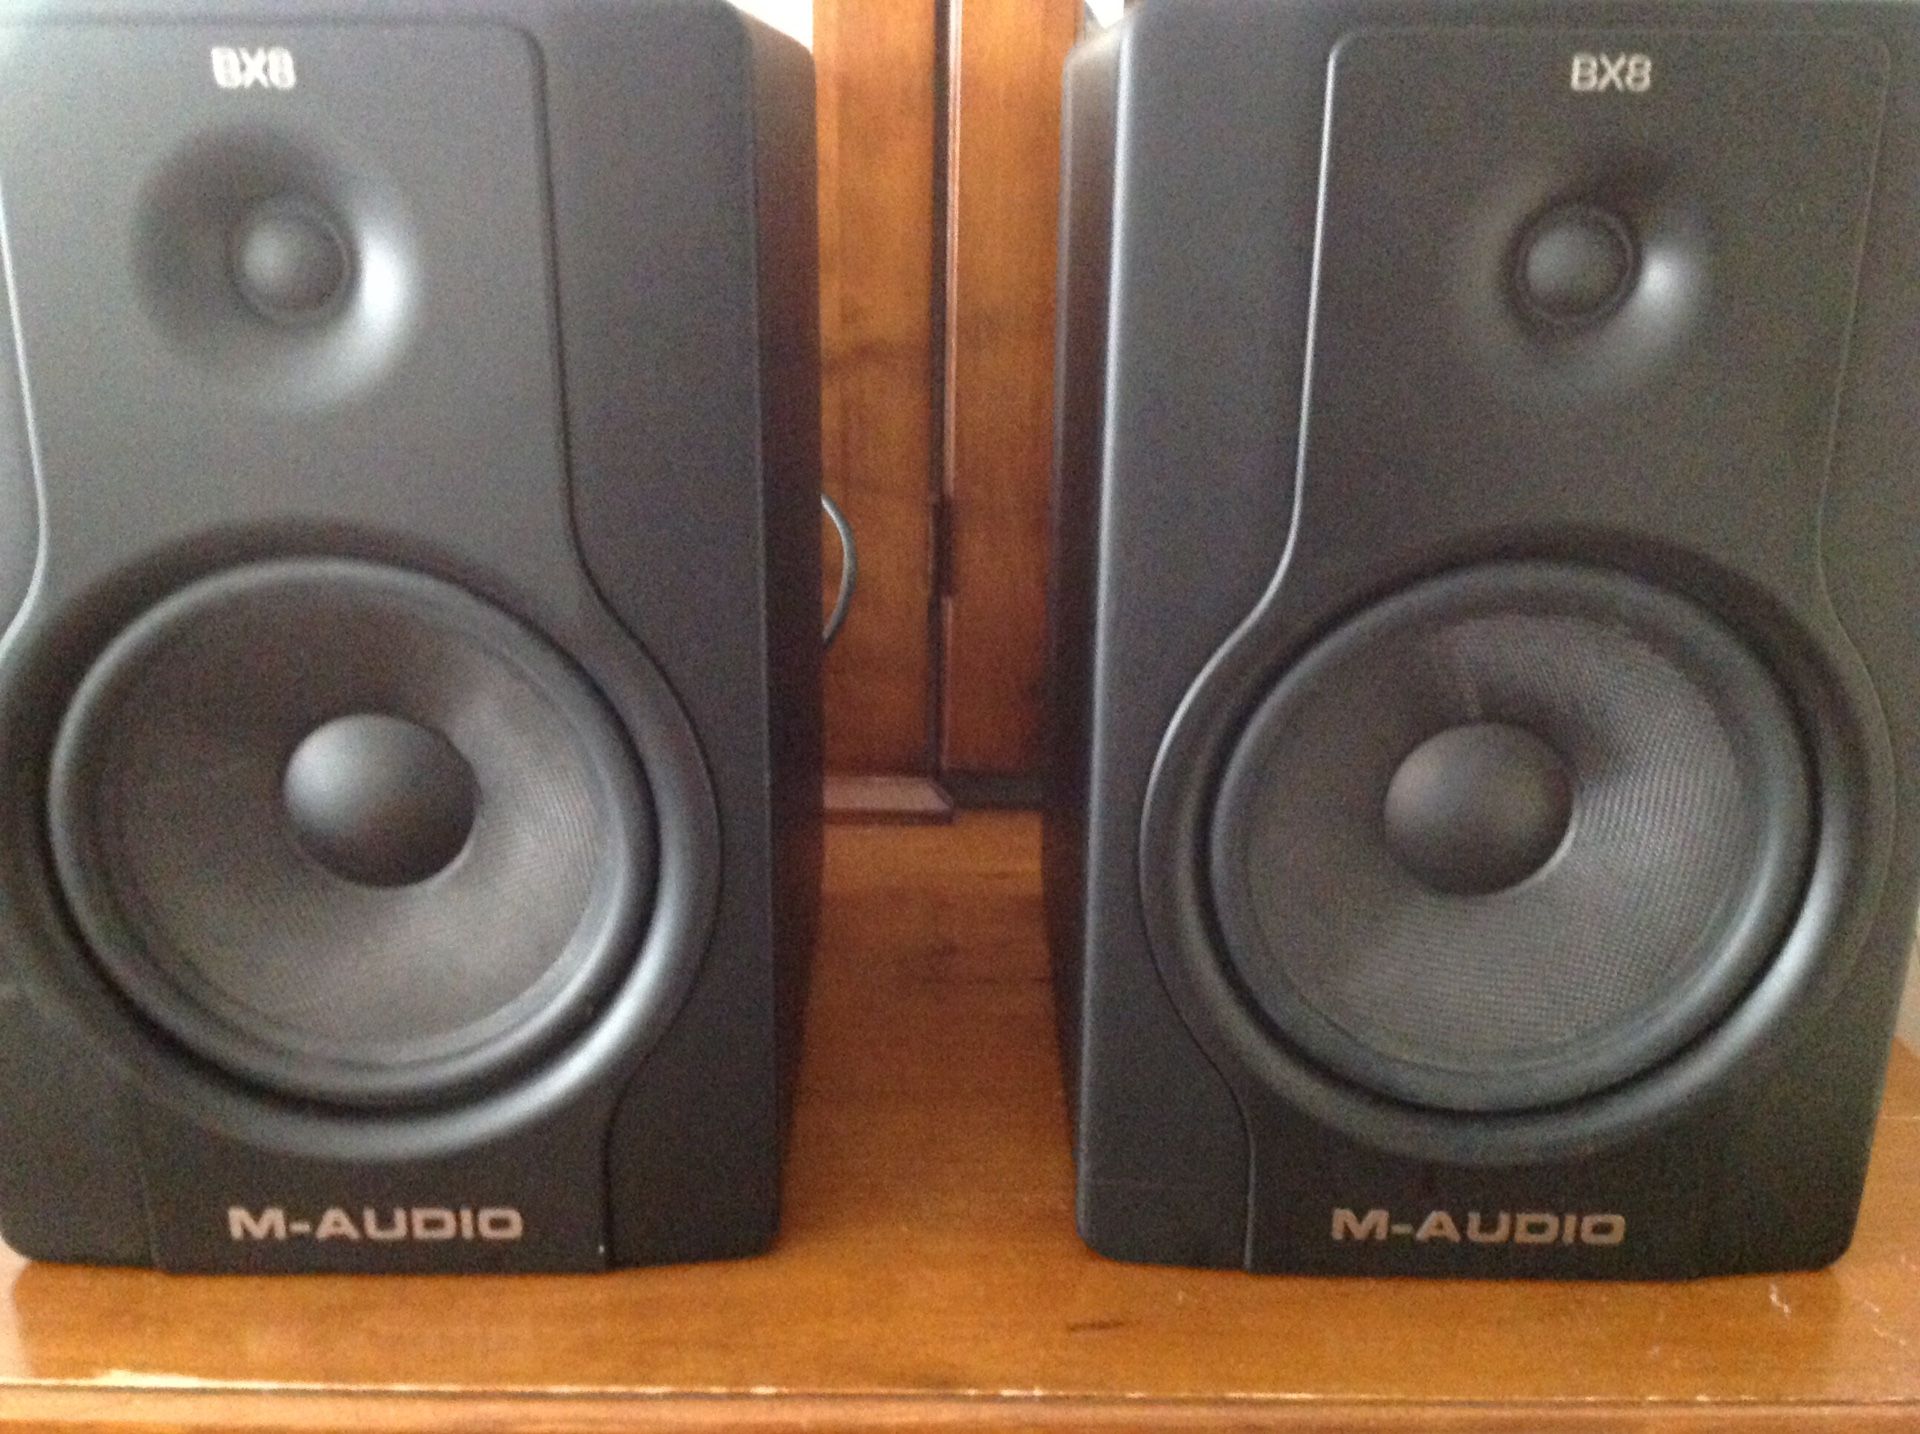 BX8 M-AUDIO speakers